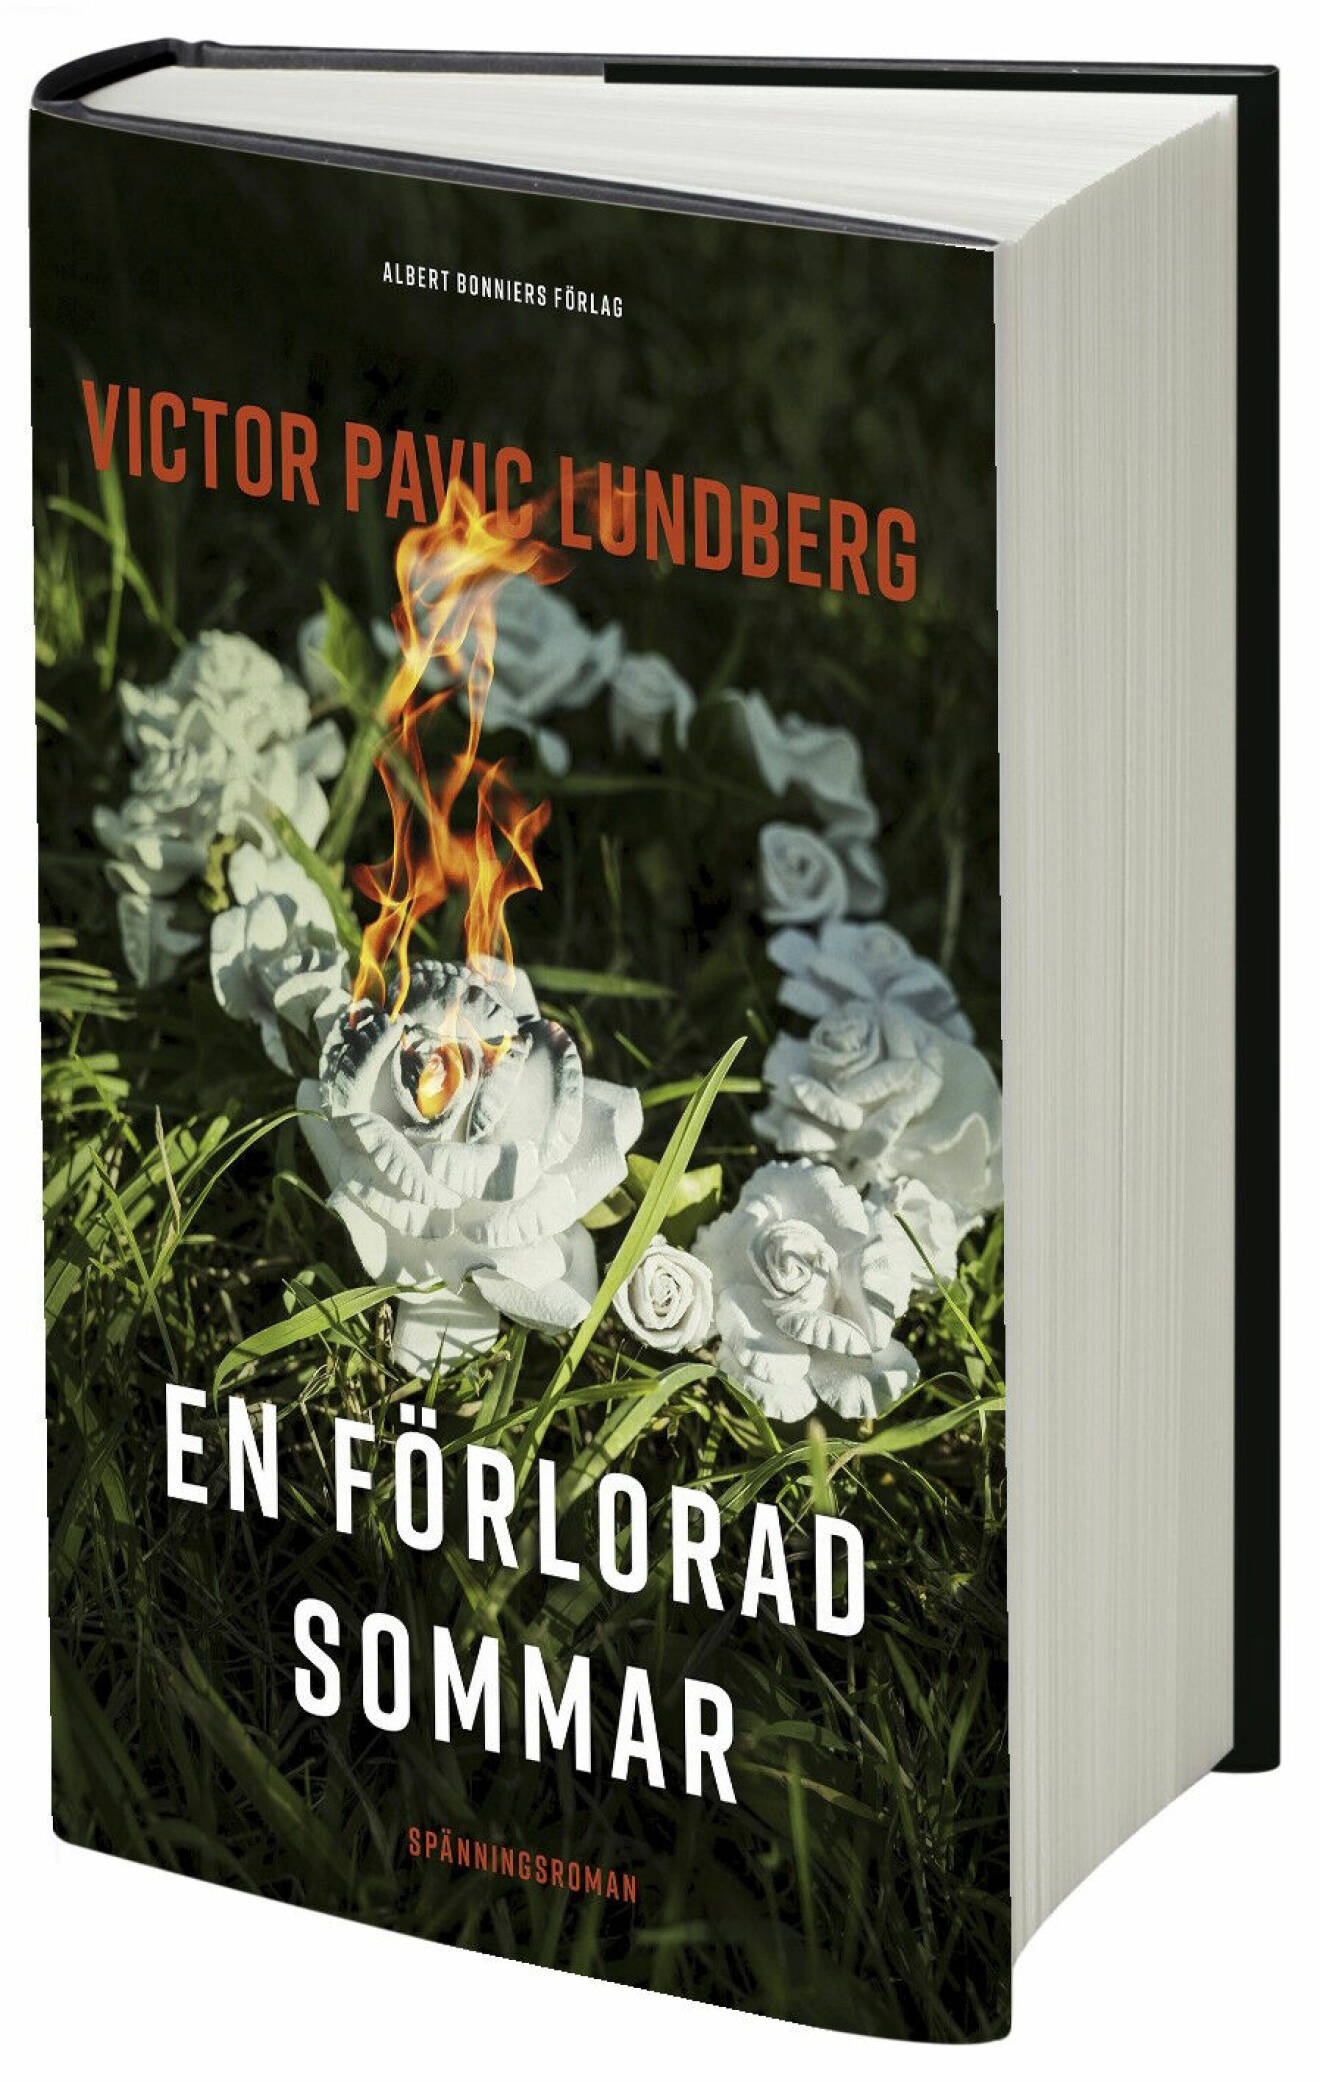 En förlorad sommar av Victor Pavic Lundberg (Albert Bonnier)